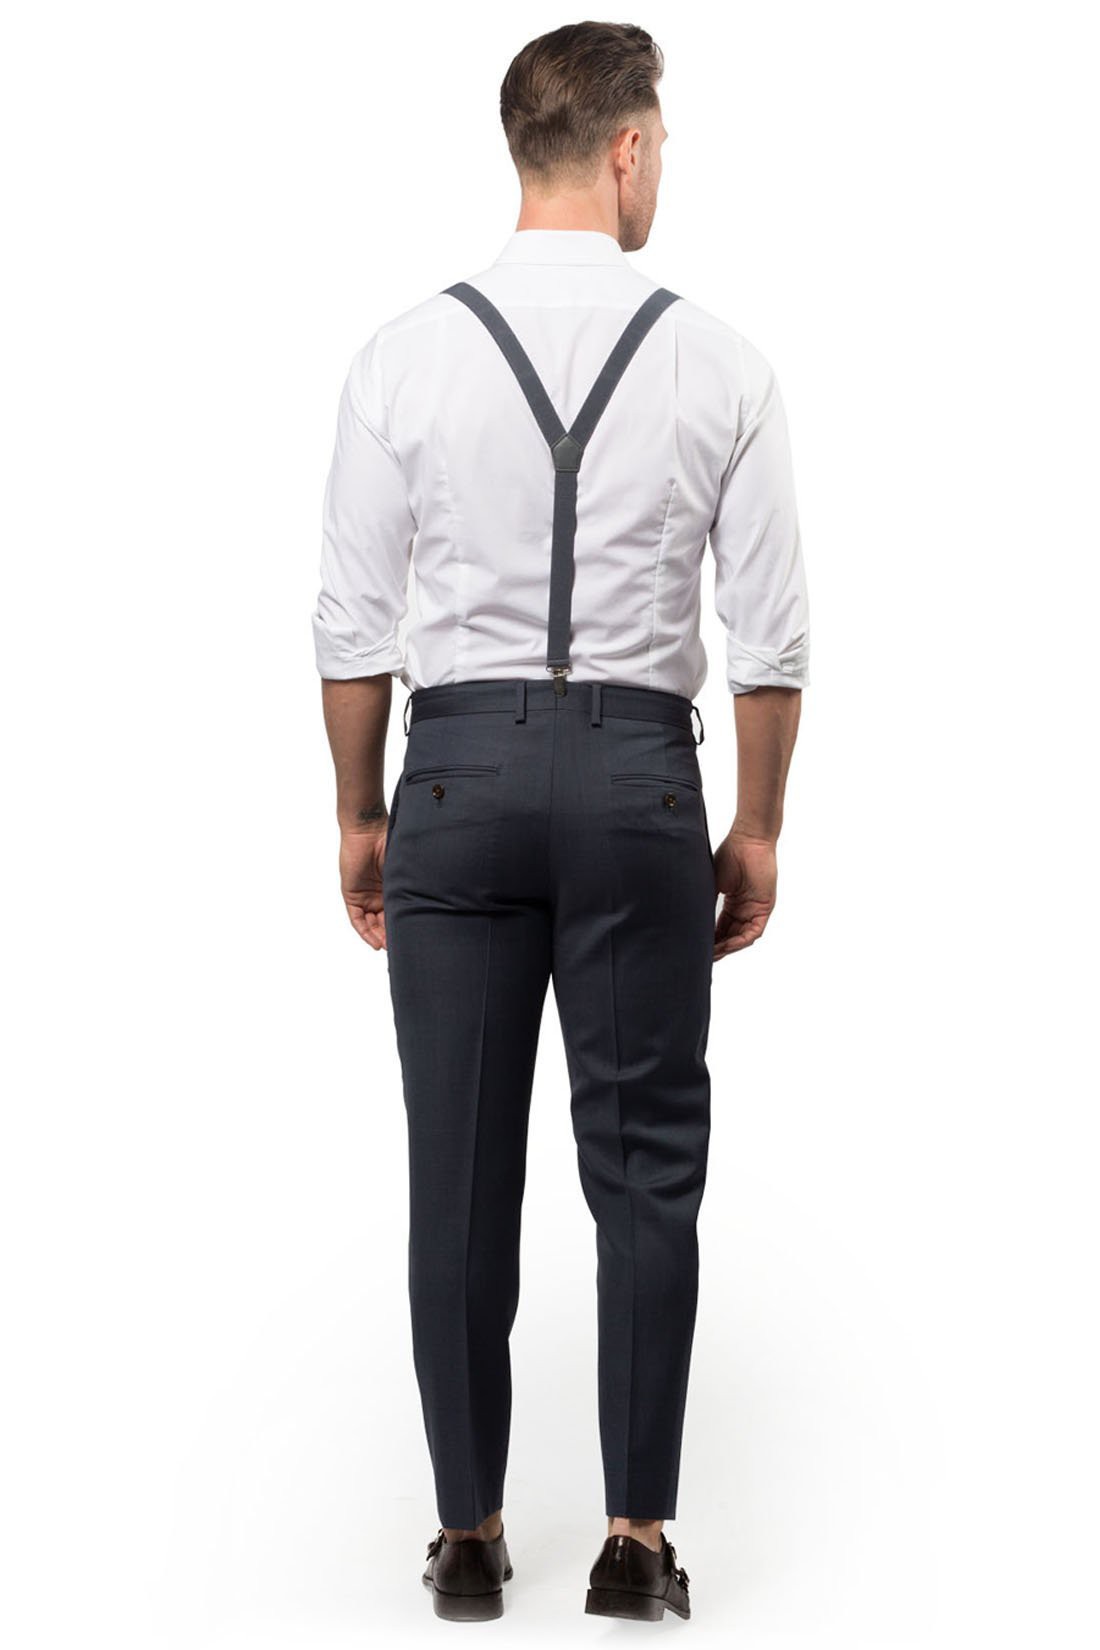 Casual Gray Groomsmen Suspenders and Ties